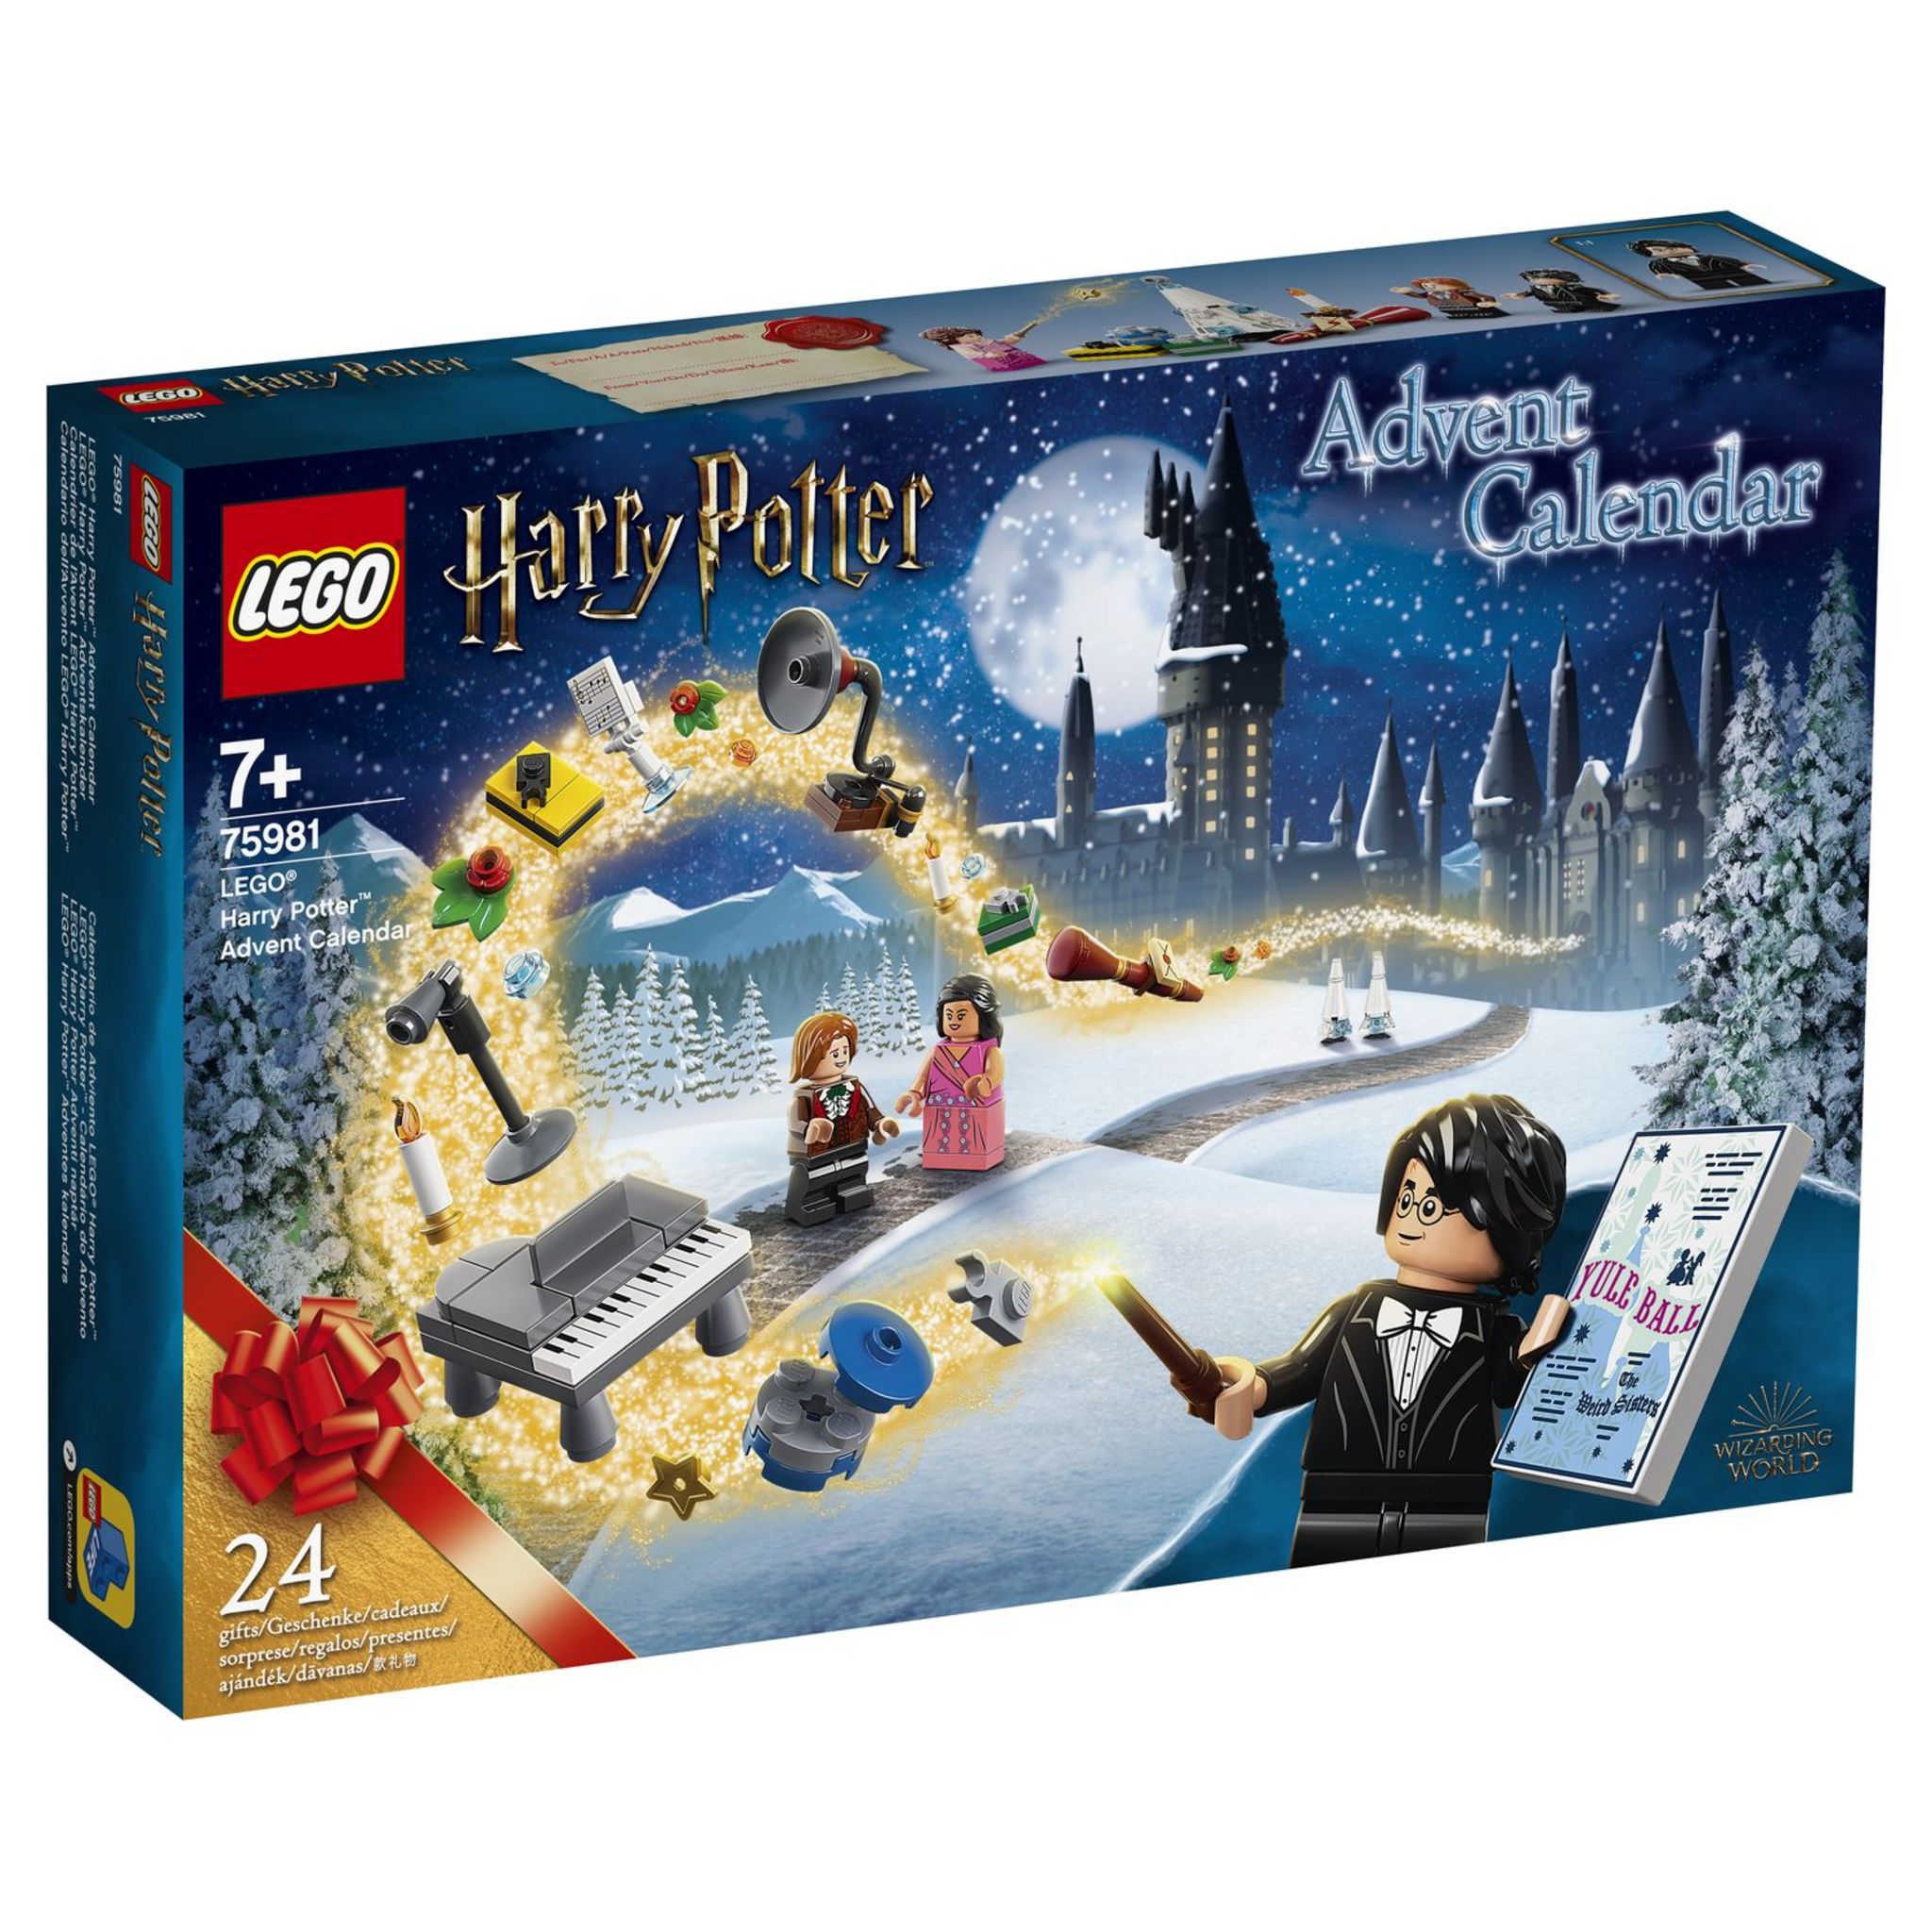 LEGO Harry Potter 76418 pas cher, Calendrier de l'Avent LEGO Harry